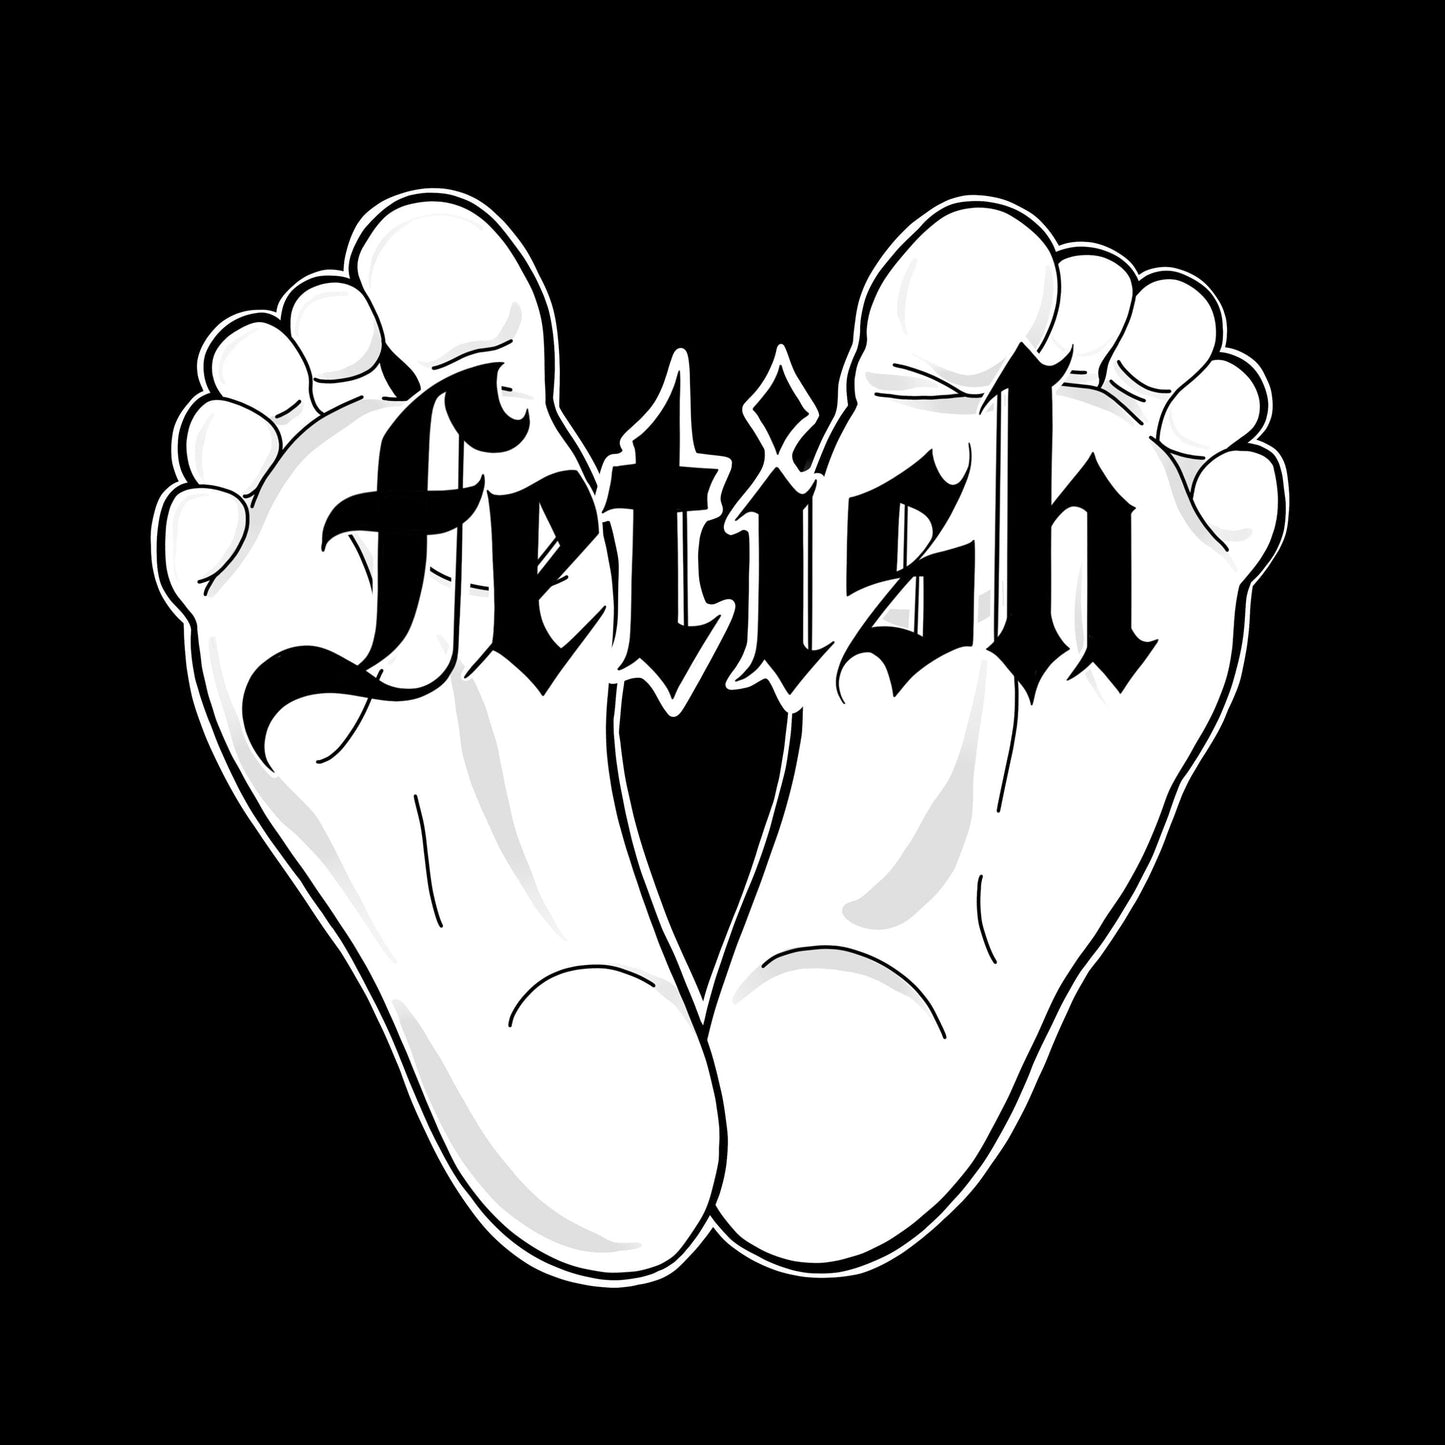 Foot Fetish, Art Print